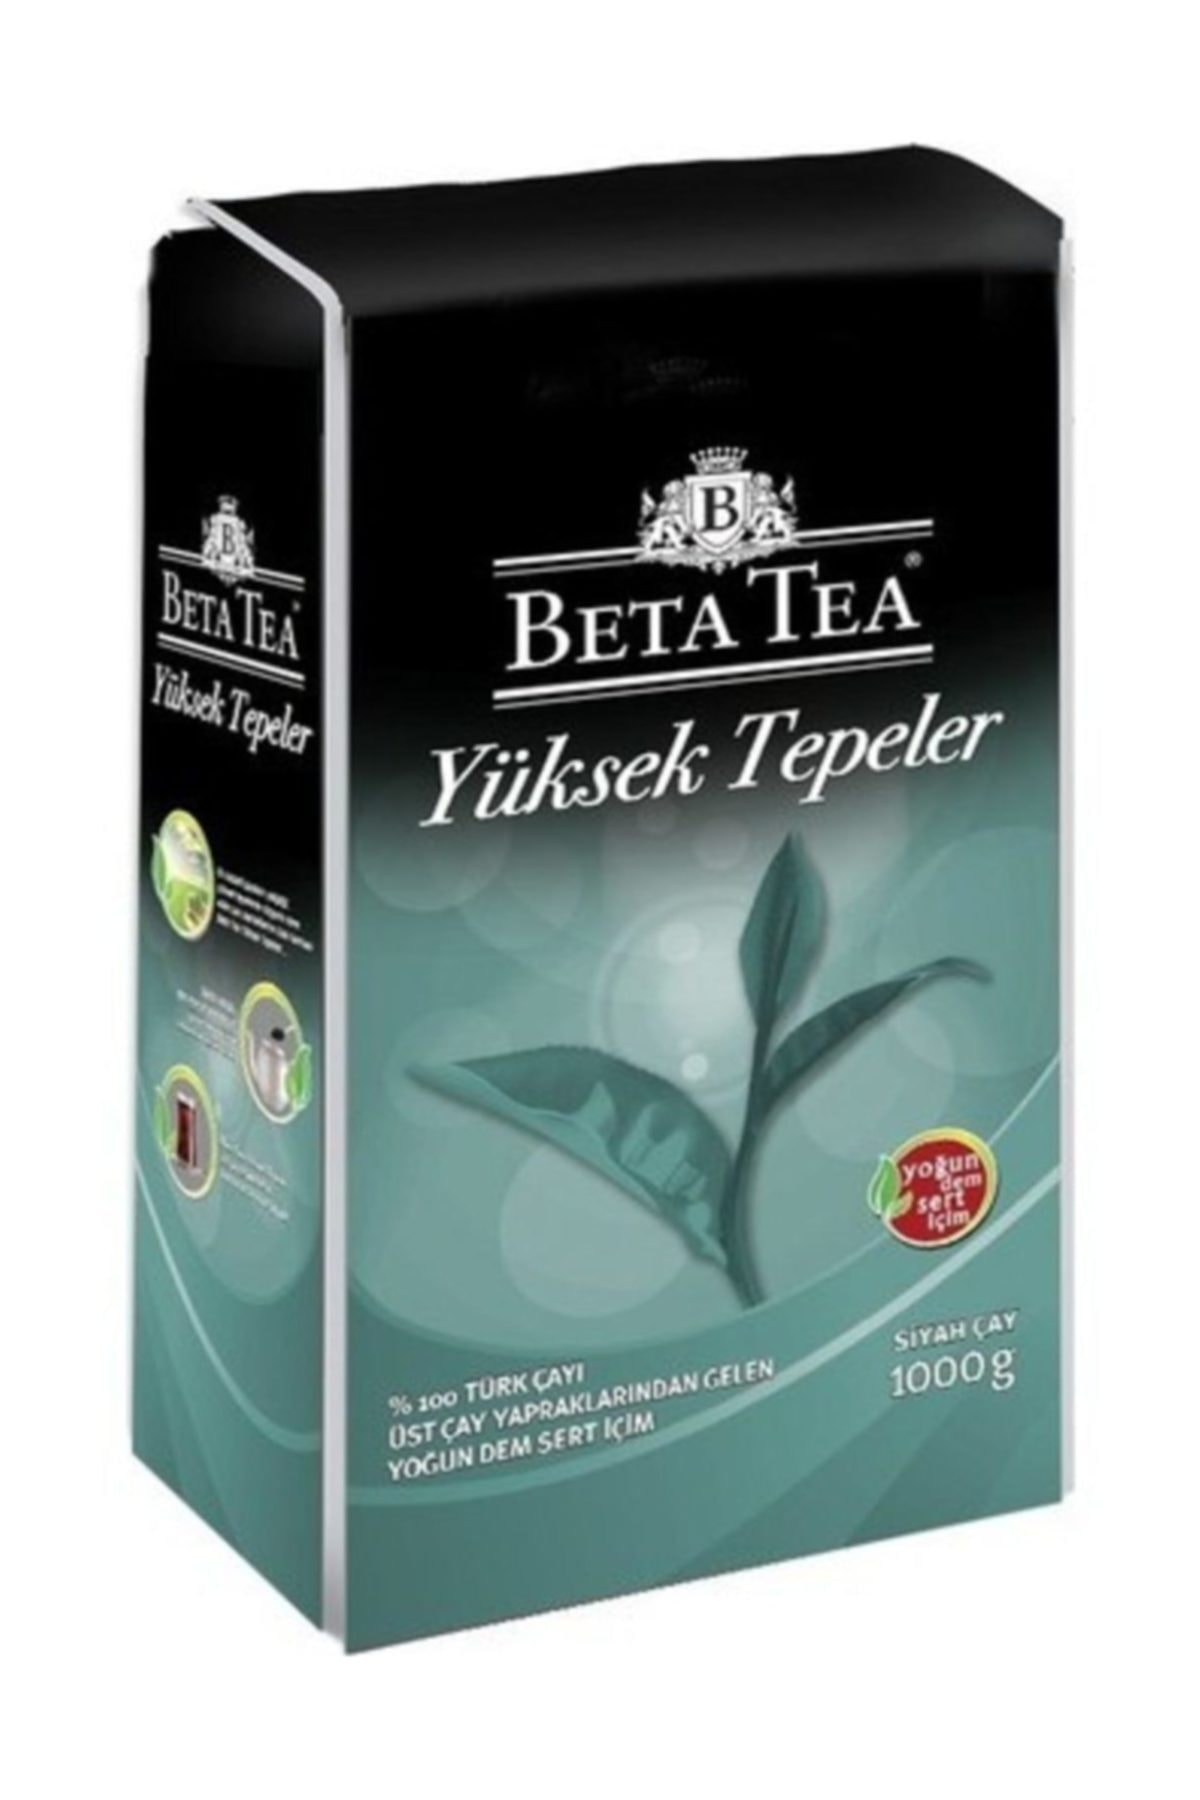 Beta Tea Yüksek Tepeler Dökme Çay 1 kg x 12 Adet